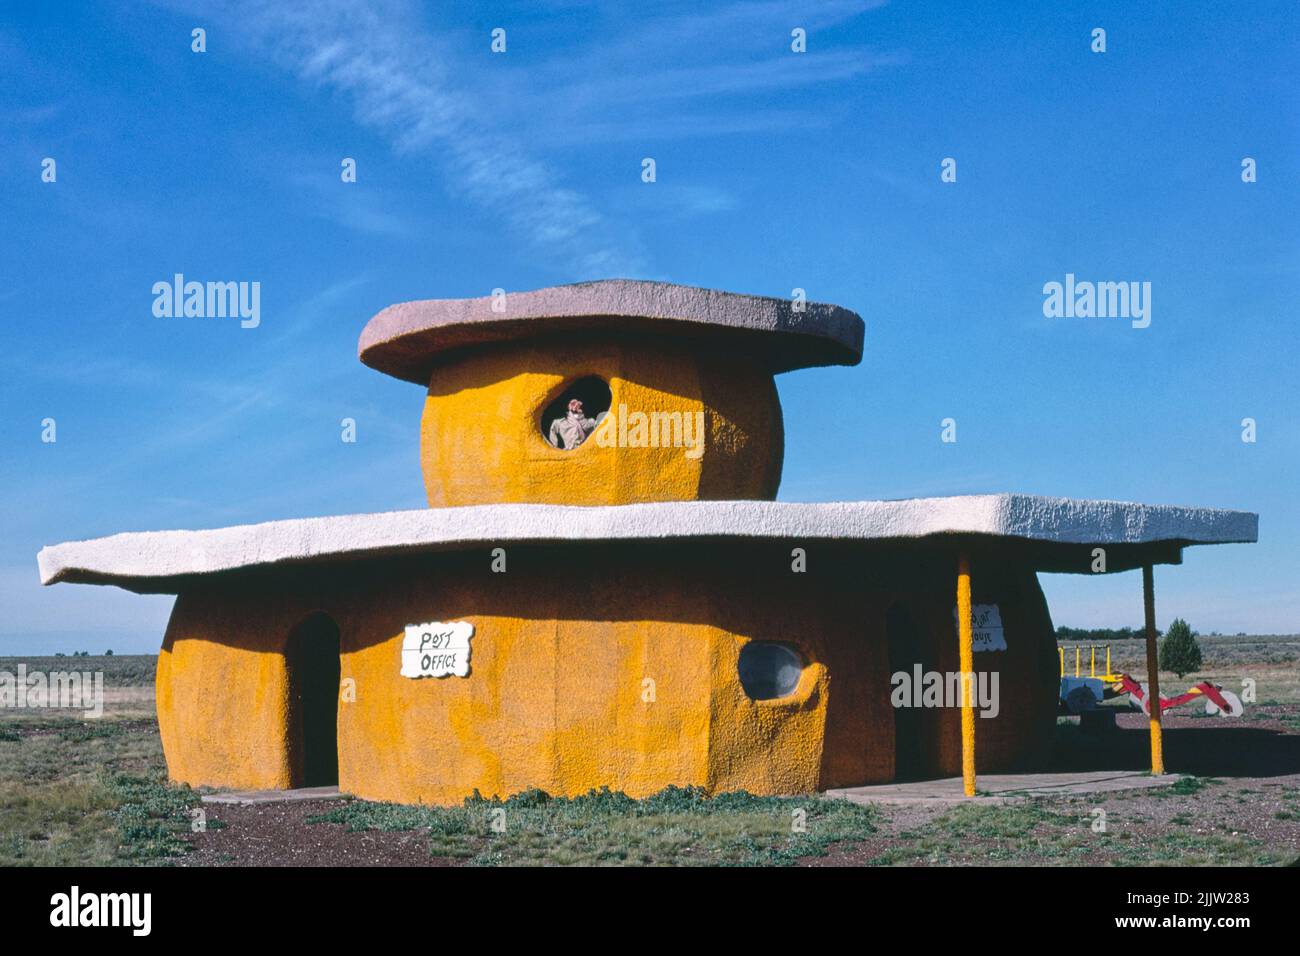 Ufficio postale, Bedrock City, RTS. 64 e 180, Valle, Arizona (1987) fotografia ad alta risoluzione di John Margolies. Originale della Biblioteca di Congr Foto Stock